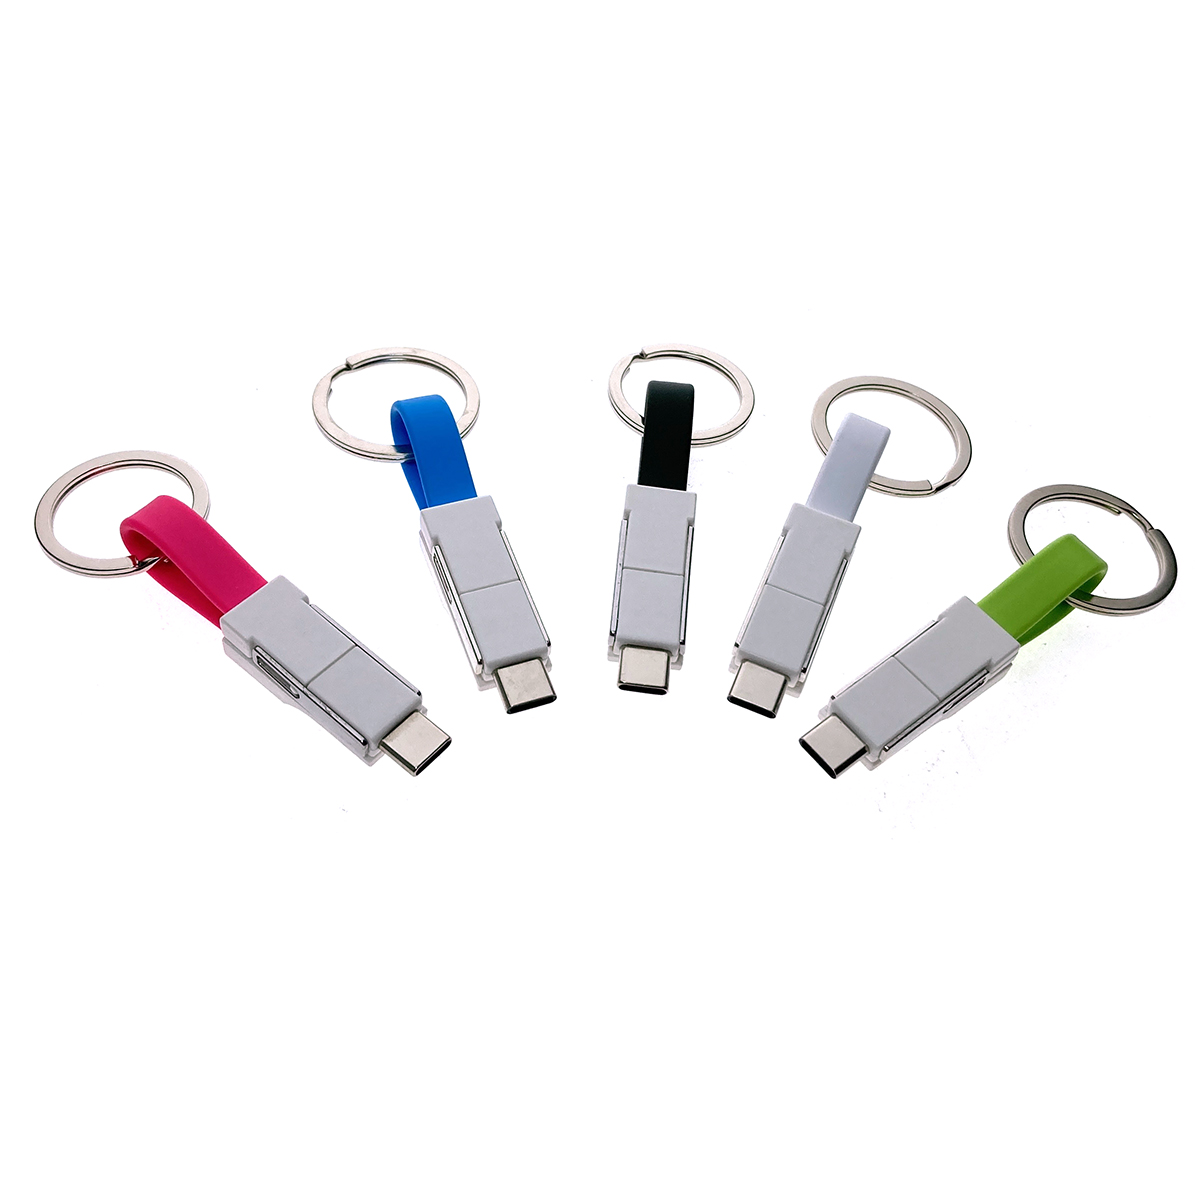 Универсальный брелок-переходник 3в1 USB 2.0 to Type C + micro USB + iphone Lightning 8pin, голубой, Emagn3i1 Espada